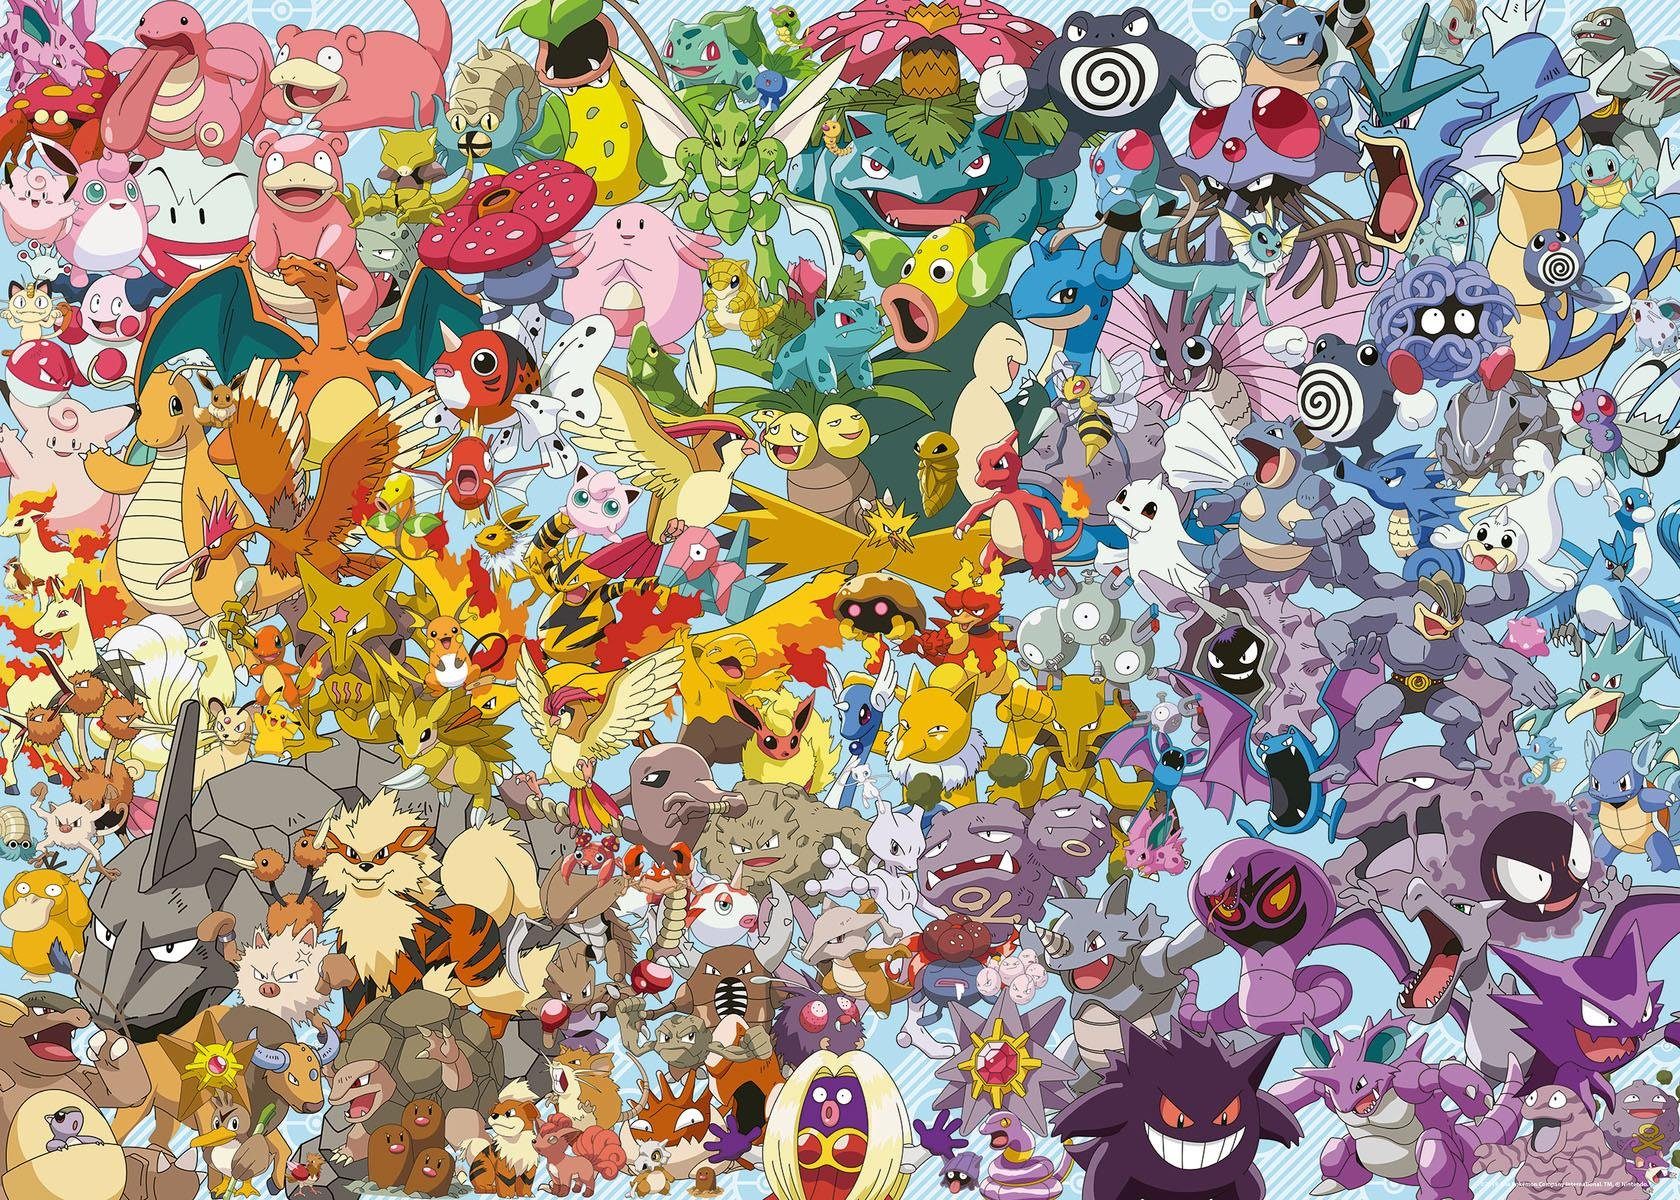 Ravensburger Puzzle weltweit 1000 in Puzzleteile, Challenge, - schützt - Wald Made Pokémon, Germany, FSC®